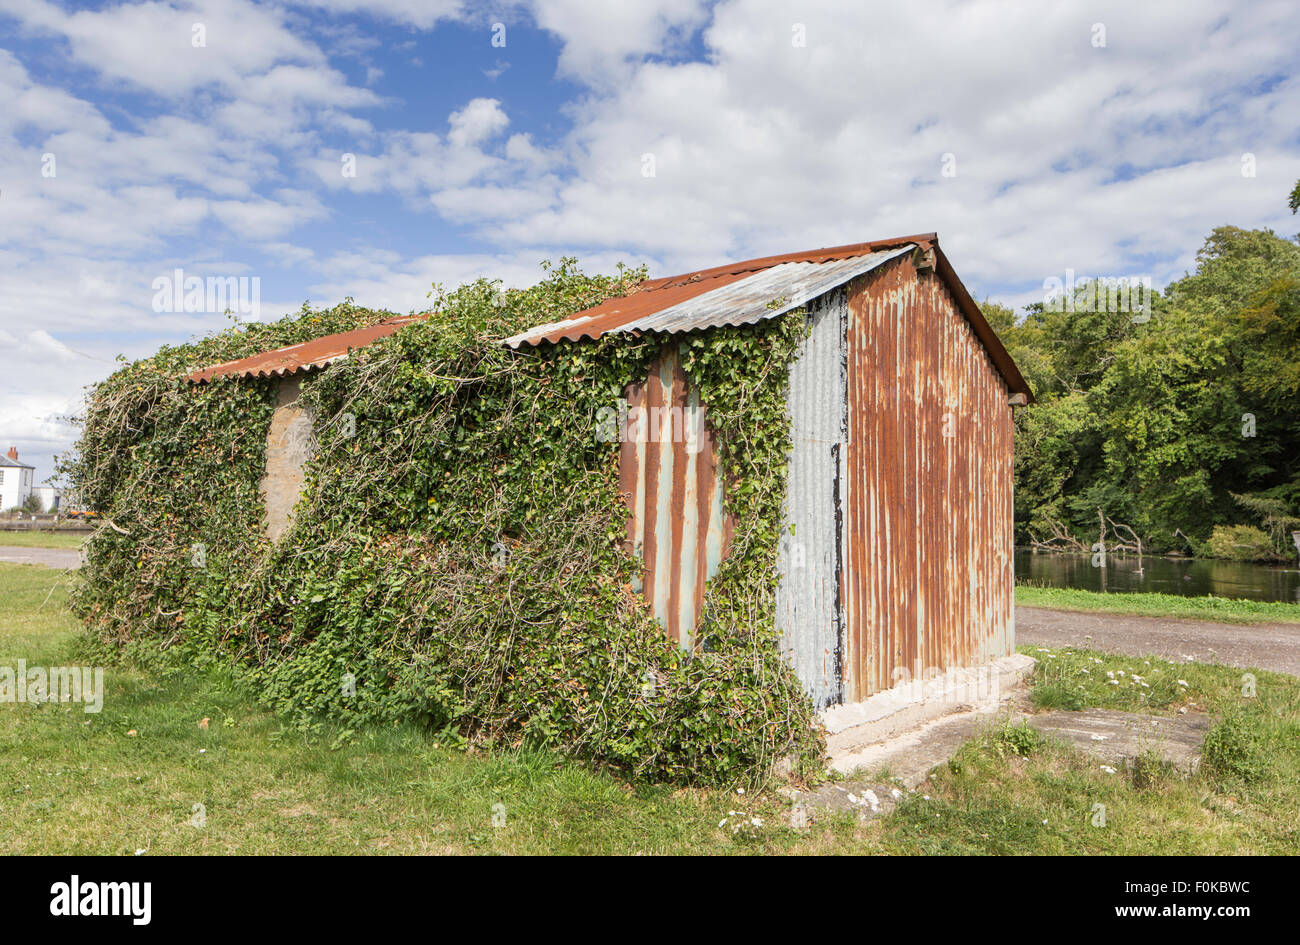 Old rusty corrugated shed, England, UK Stock Photo